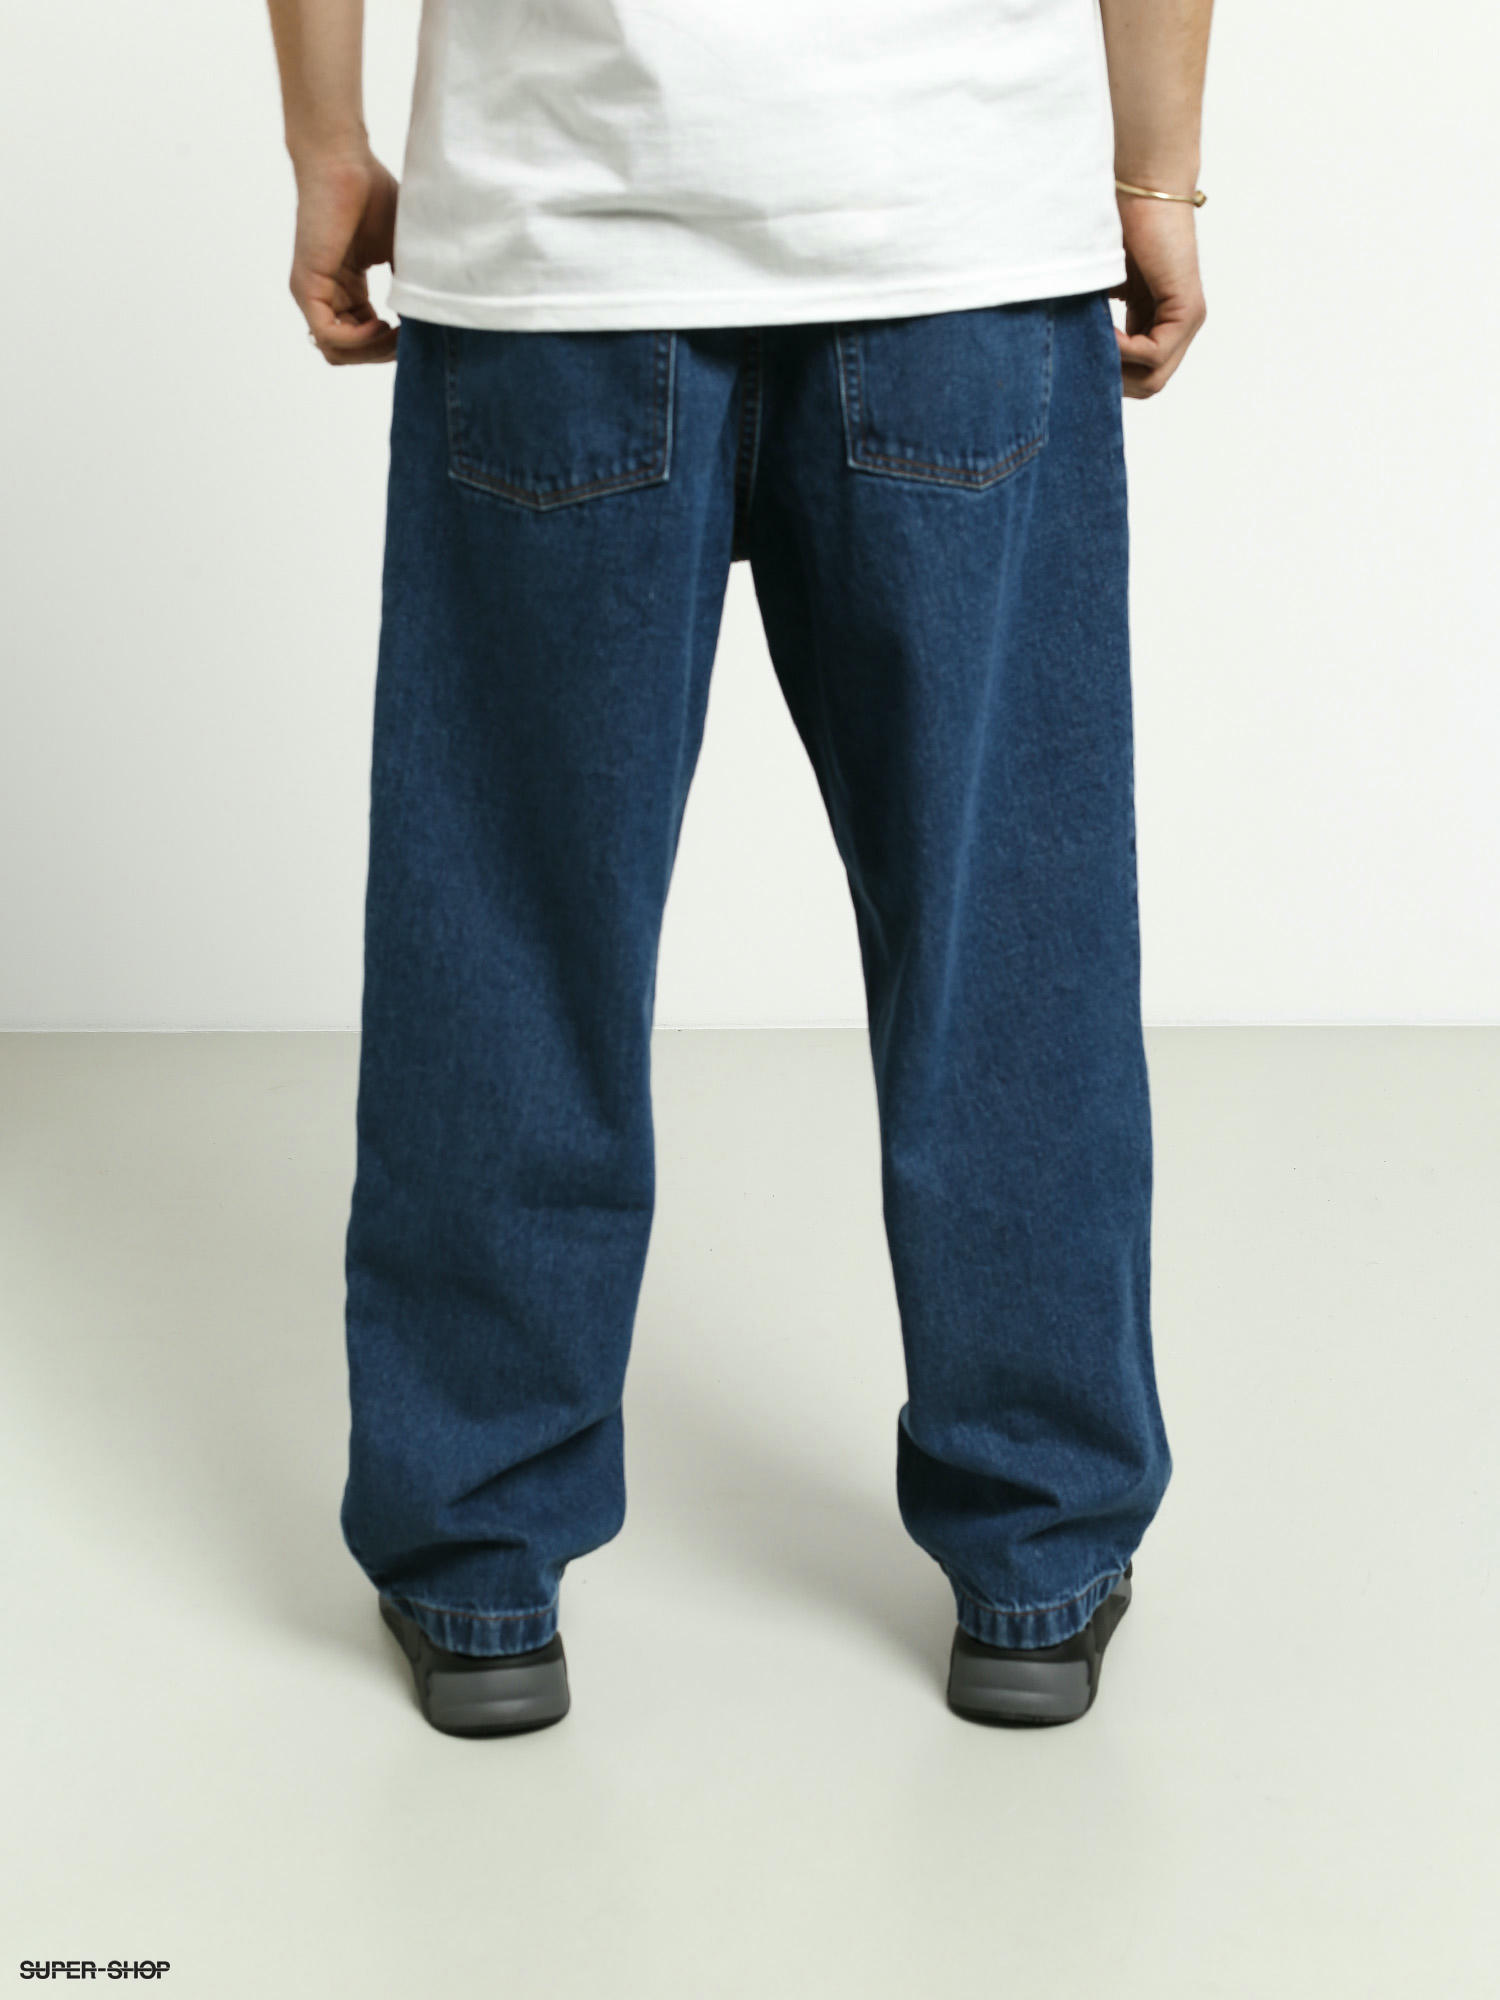 Polar Skate Big Boy Jeans Pants (dark blue)